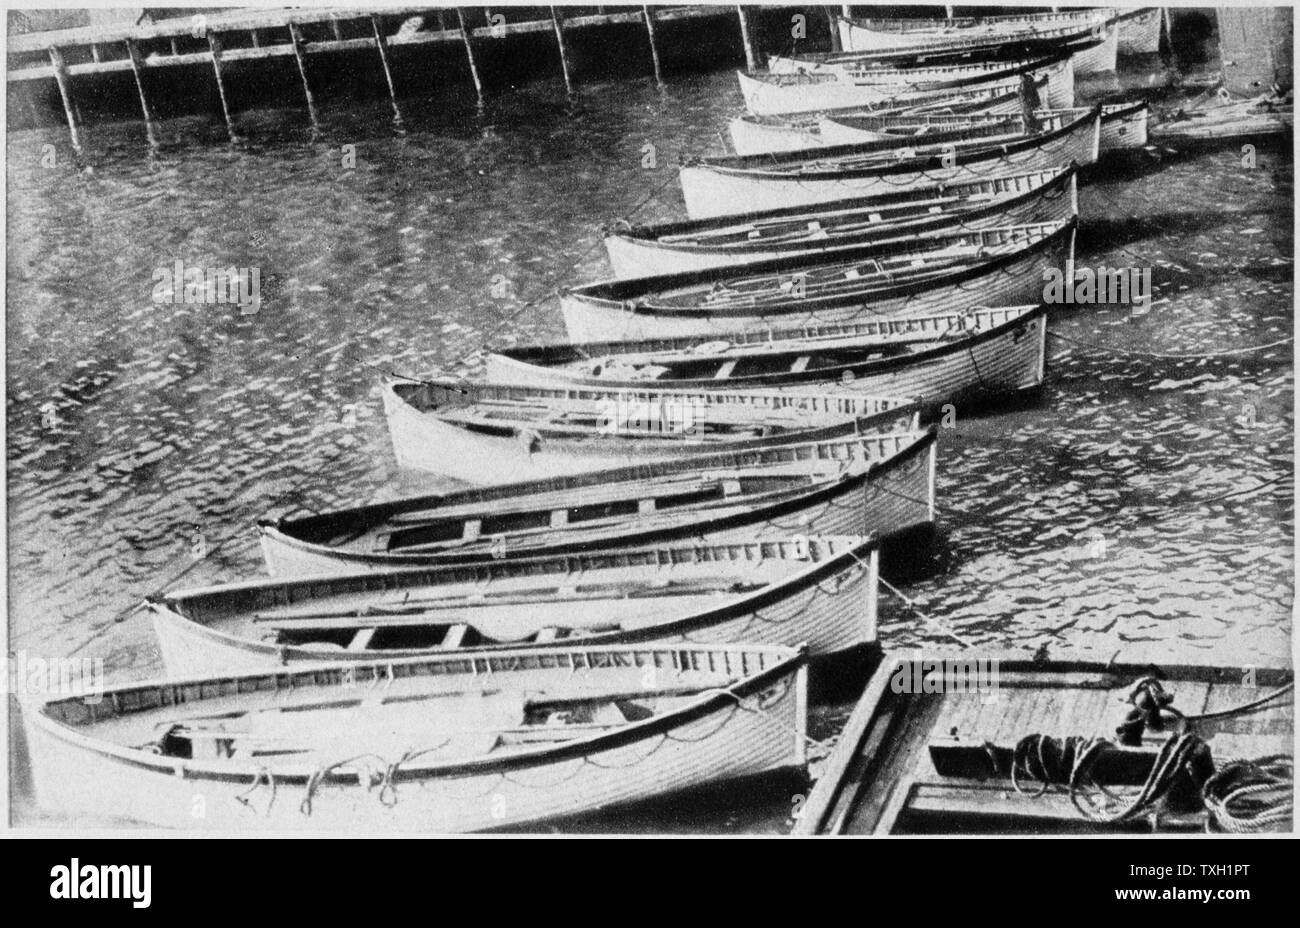 Der Verlust der SS Titanic, 14. April 1912: Die rettungsboote. All das war der größte Schiff der Welt Links - die Rettungsboote, dass die meisten der 705 Überlebenden durchgeführt. Durch die White Star Line betrieben, SS Titanic Struck ein Eisberg im dichten Nebel vor Neufundland. Sie war das größte und luxuriöseste Passagierschiff ihrer Zeit, und dachte an unsinkbar. In der Kollision fünf Ihrer wasserdichten Abteilungen gefährdet und sie sank. Aus der 2228 Menschen an Bord, nur 705 überlebten. Eine wesentliche Ursache für den Verlust des Lebens war die nicht ausreichende Anzahl Rettungsboote durchgeführt. Stockfoto